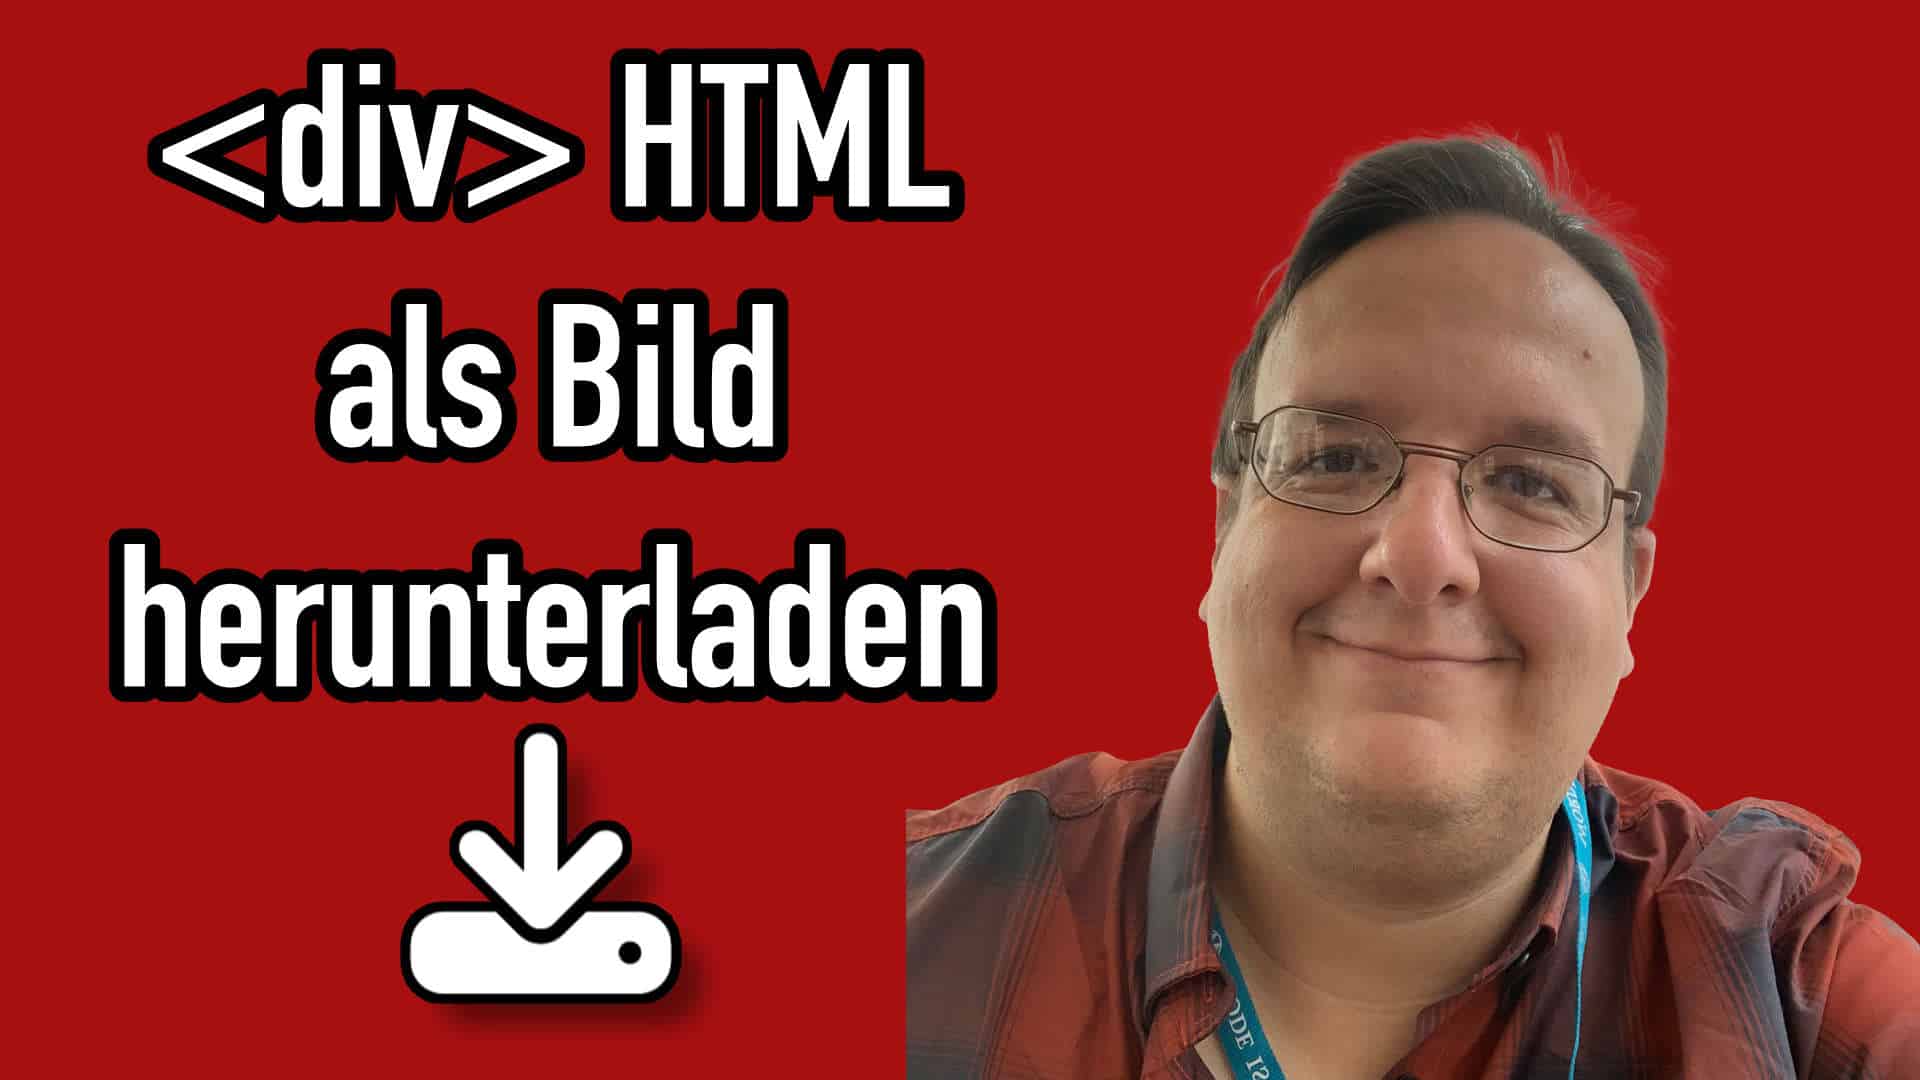 HTML Element als Bild herunterladen